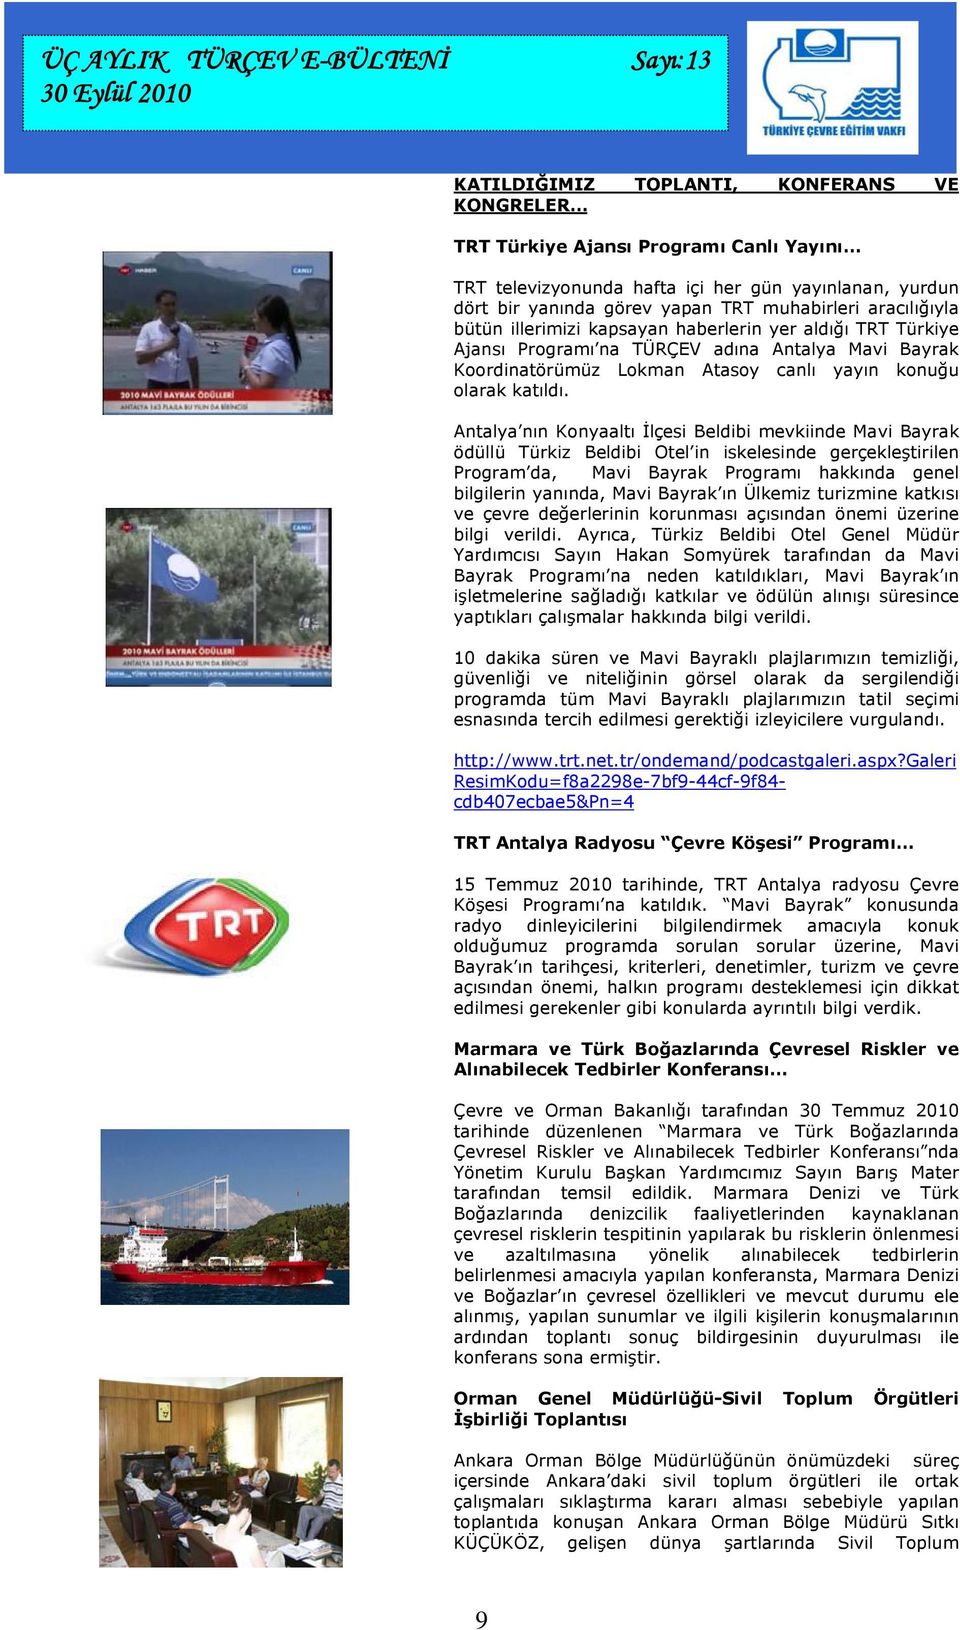 Antalya nın Konyaaltı İlçesi Beldibi mevkiinde Mavi Bayrak ödüllü Türkiz Beldibi Otel in iskelesinde gerçekleştirilen Program da, Mavi Bayrak Programı hakkında genel bilgilerin yanında, Mavi Bayrak